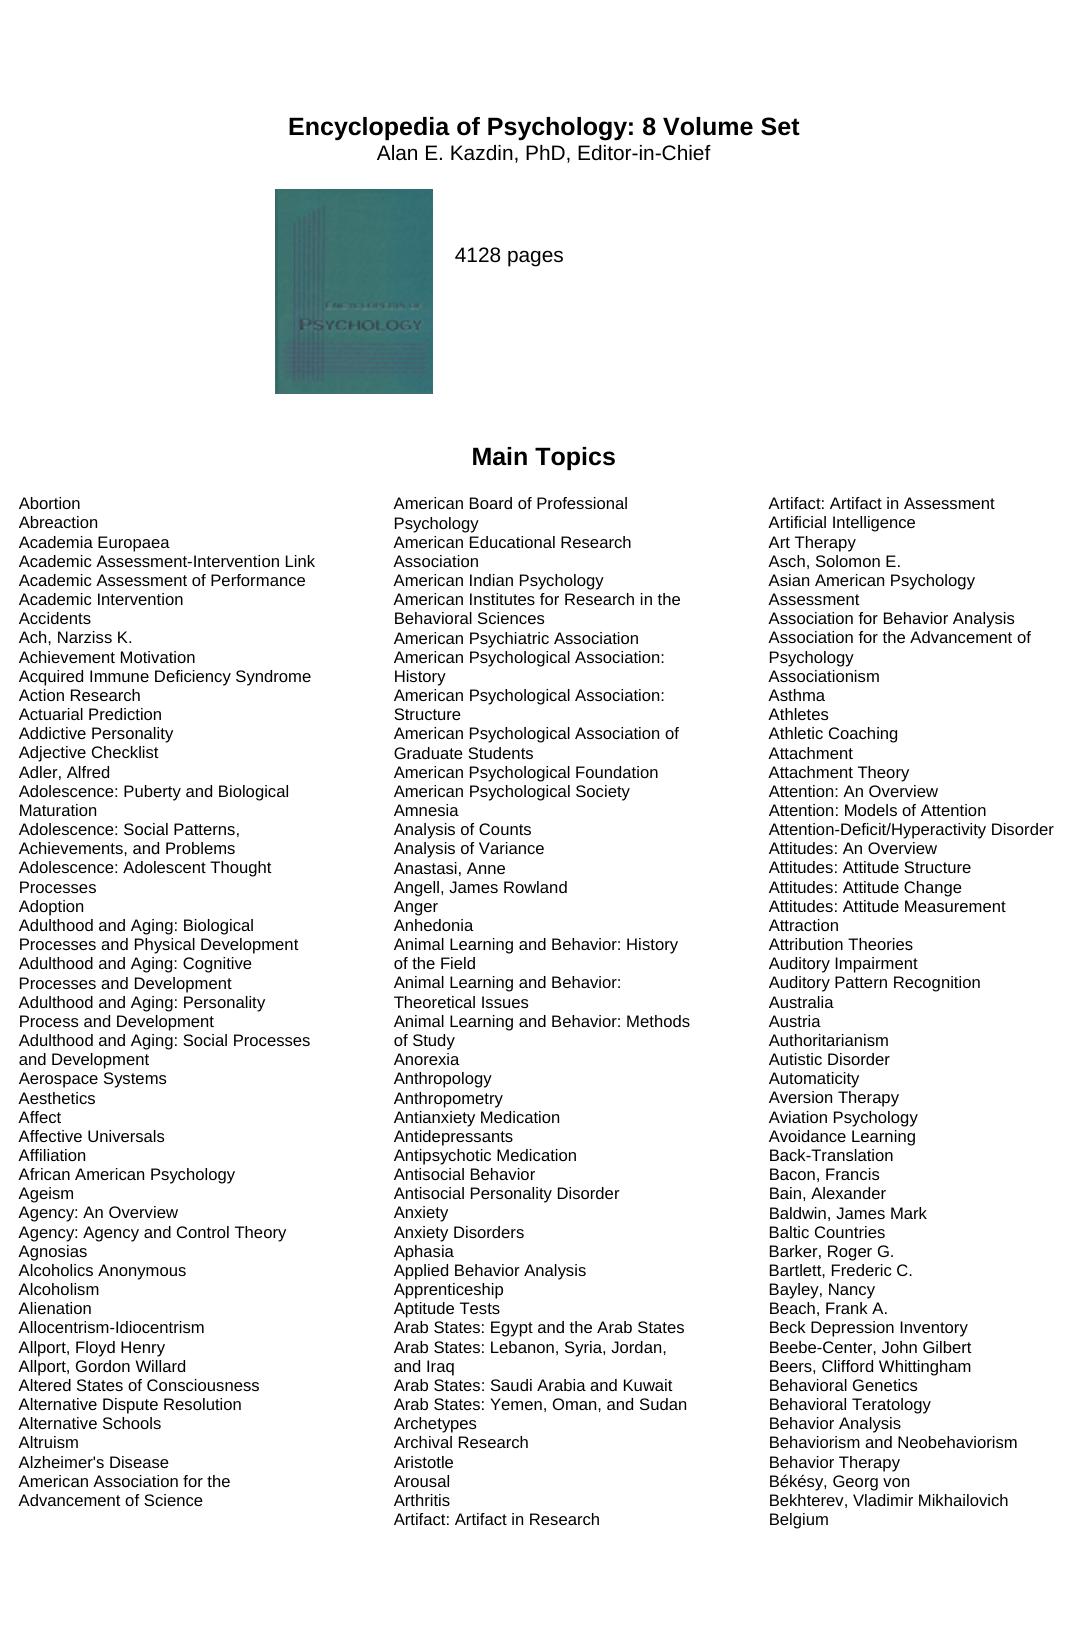 Encyclopedia of Psychology 8-Volume Set